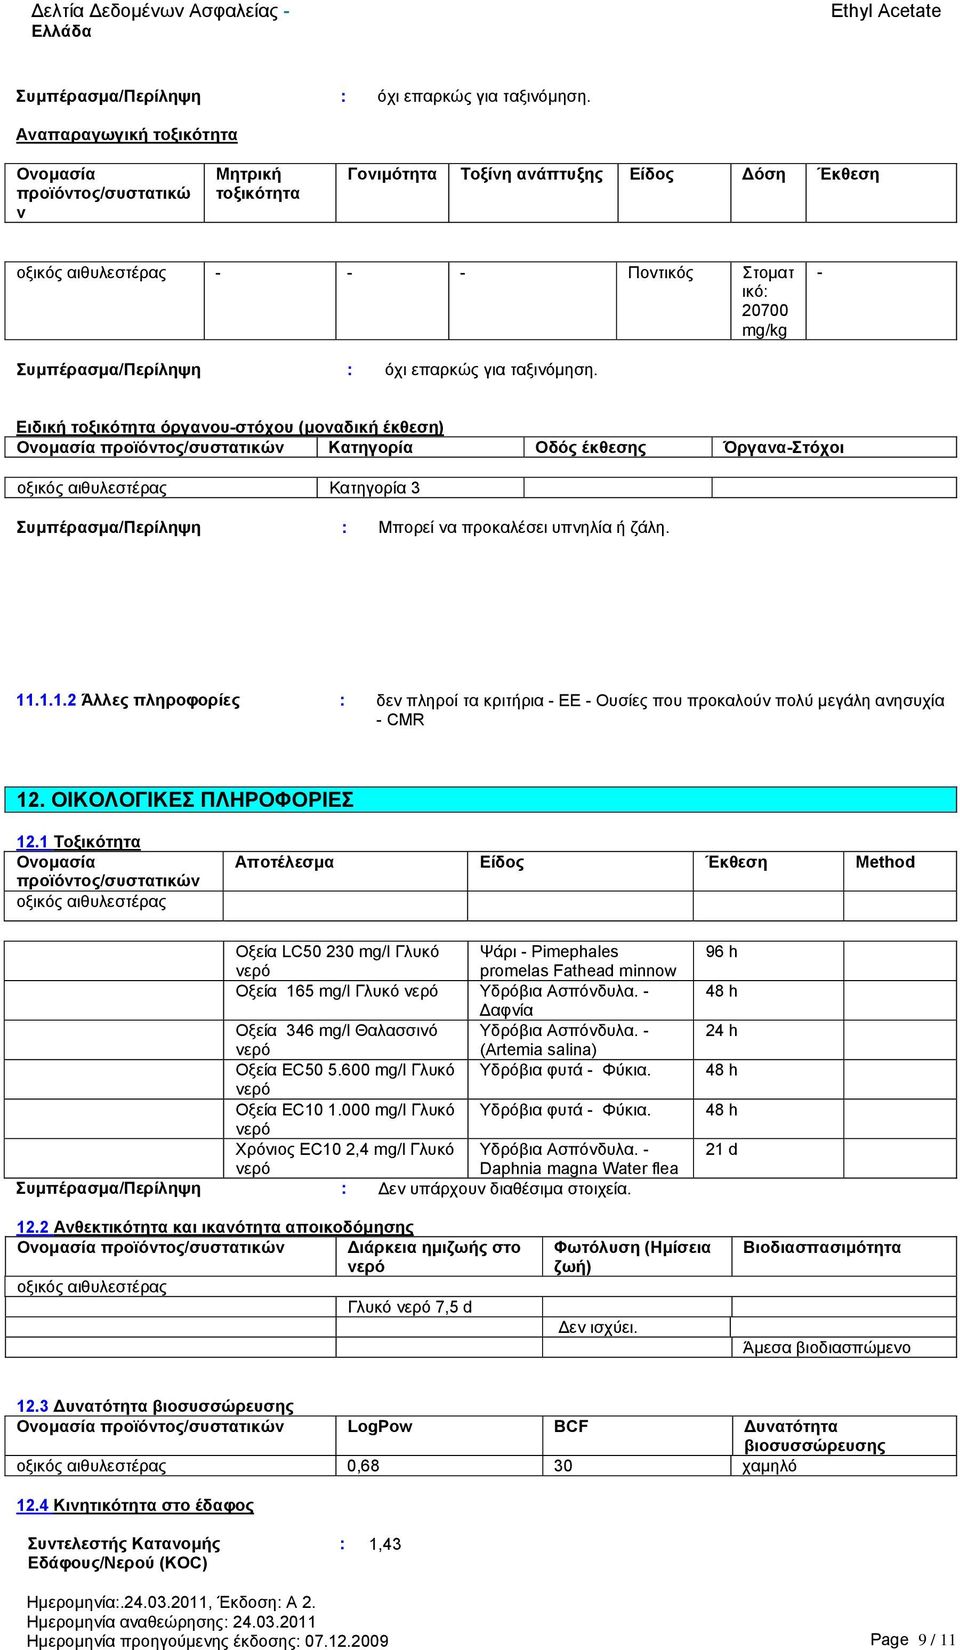 τοξικότητα όργανου-στόχου (μοναδική έκθεση) Ονομασία προϊόντος/συστατικών Κατηγορία Οδός έκθεσης Όργανα-Στόχοι οξικός αιθυλεστέρας Κατηγορία 3 Συμπέρασμα/Περίληψη : Μπορεί να προκαλέσει υπνηλία ή